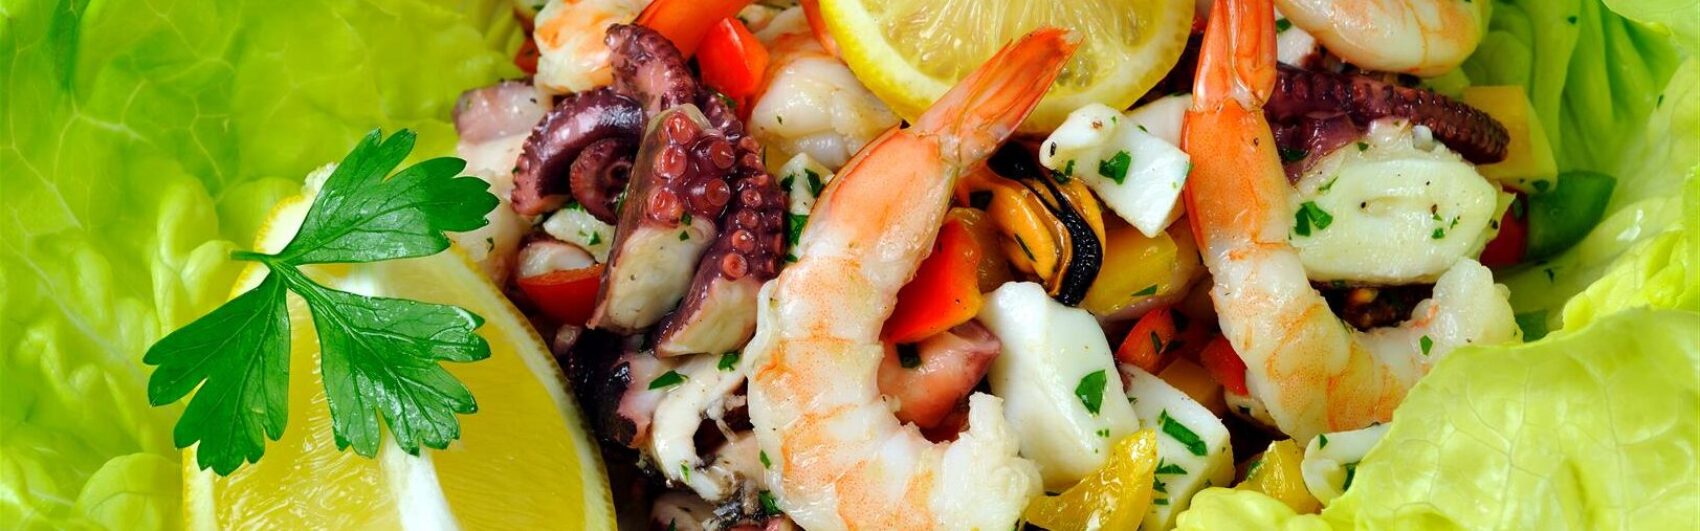 Salade de fruits de mer à la Corse